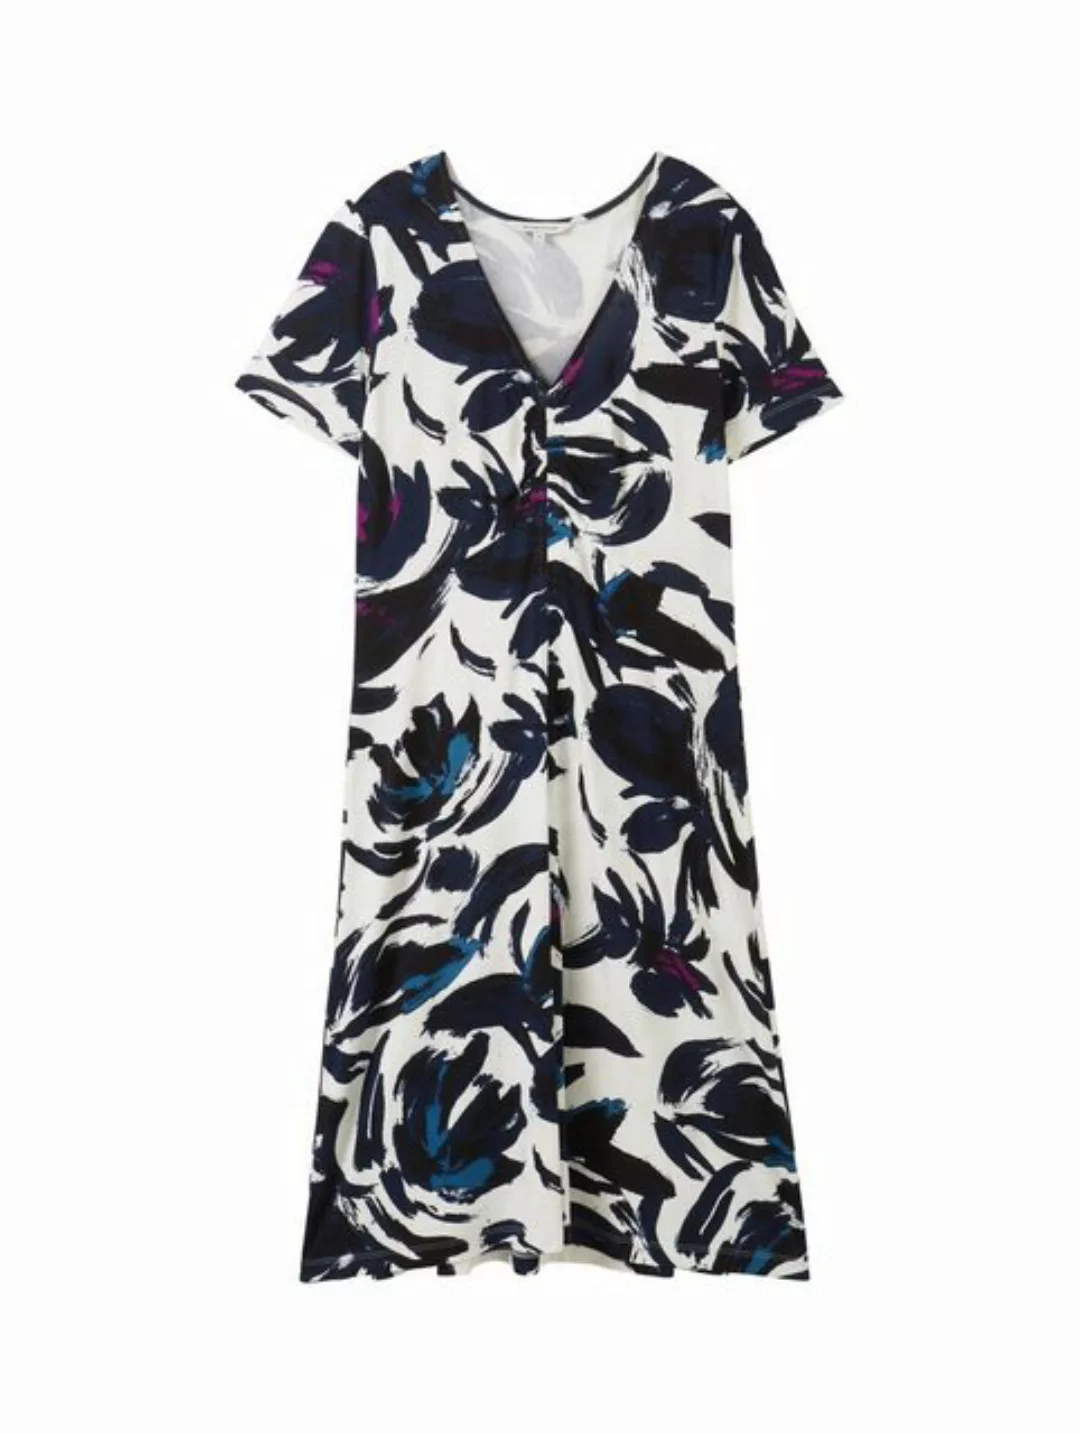 TOM TAILOR Sommerkleid easy jersey dress, dark blue floral design günstig online kaufen